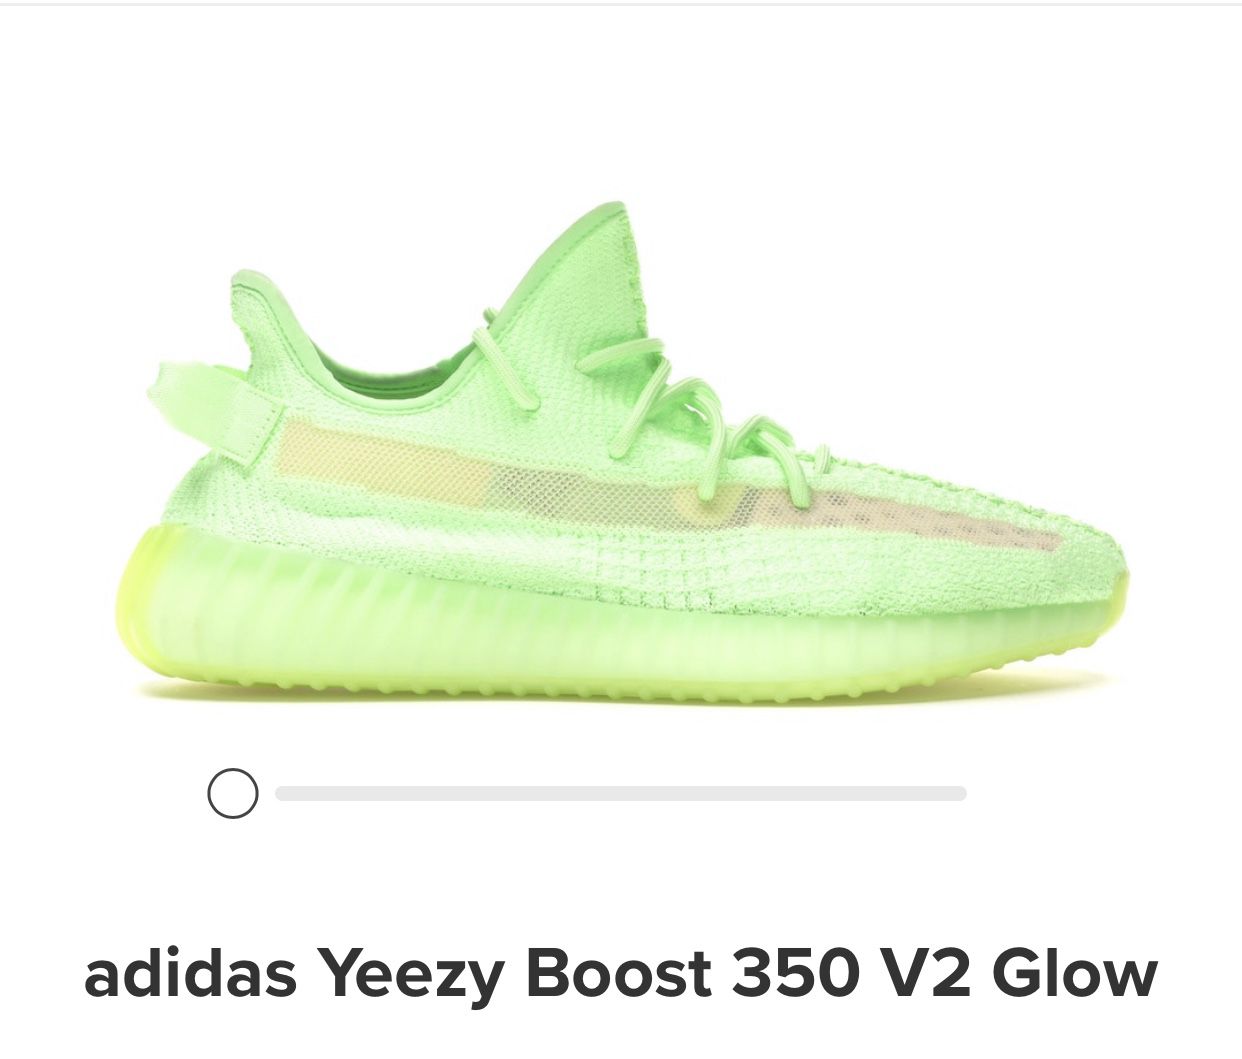 Men’s Adidas Yeezy Boost 350 V2 Glow Sz. 13